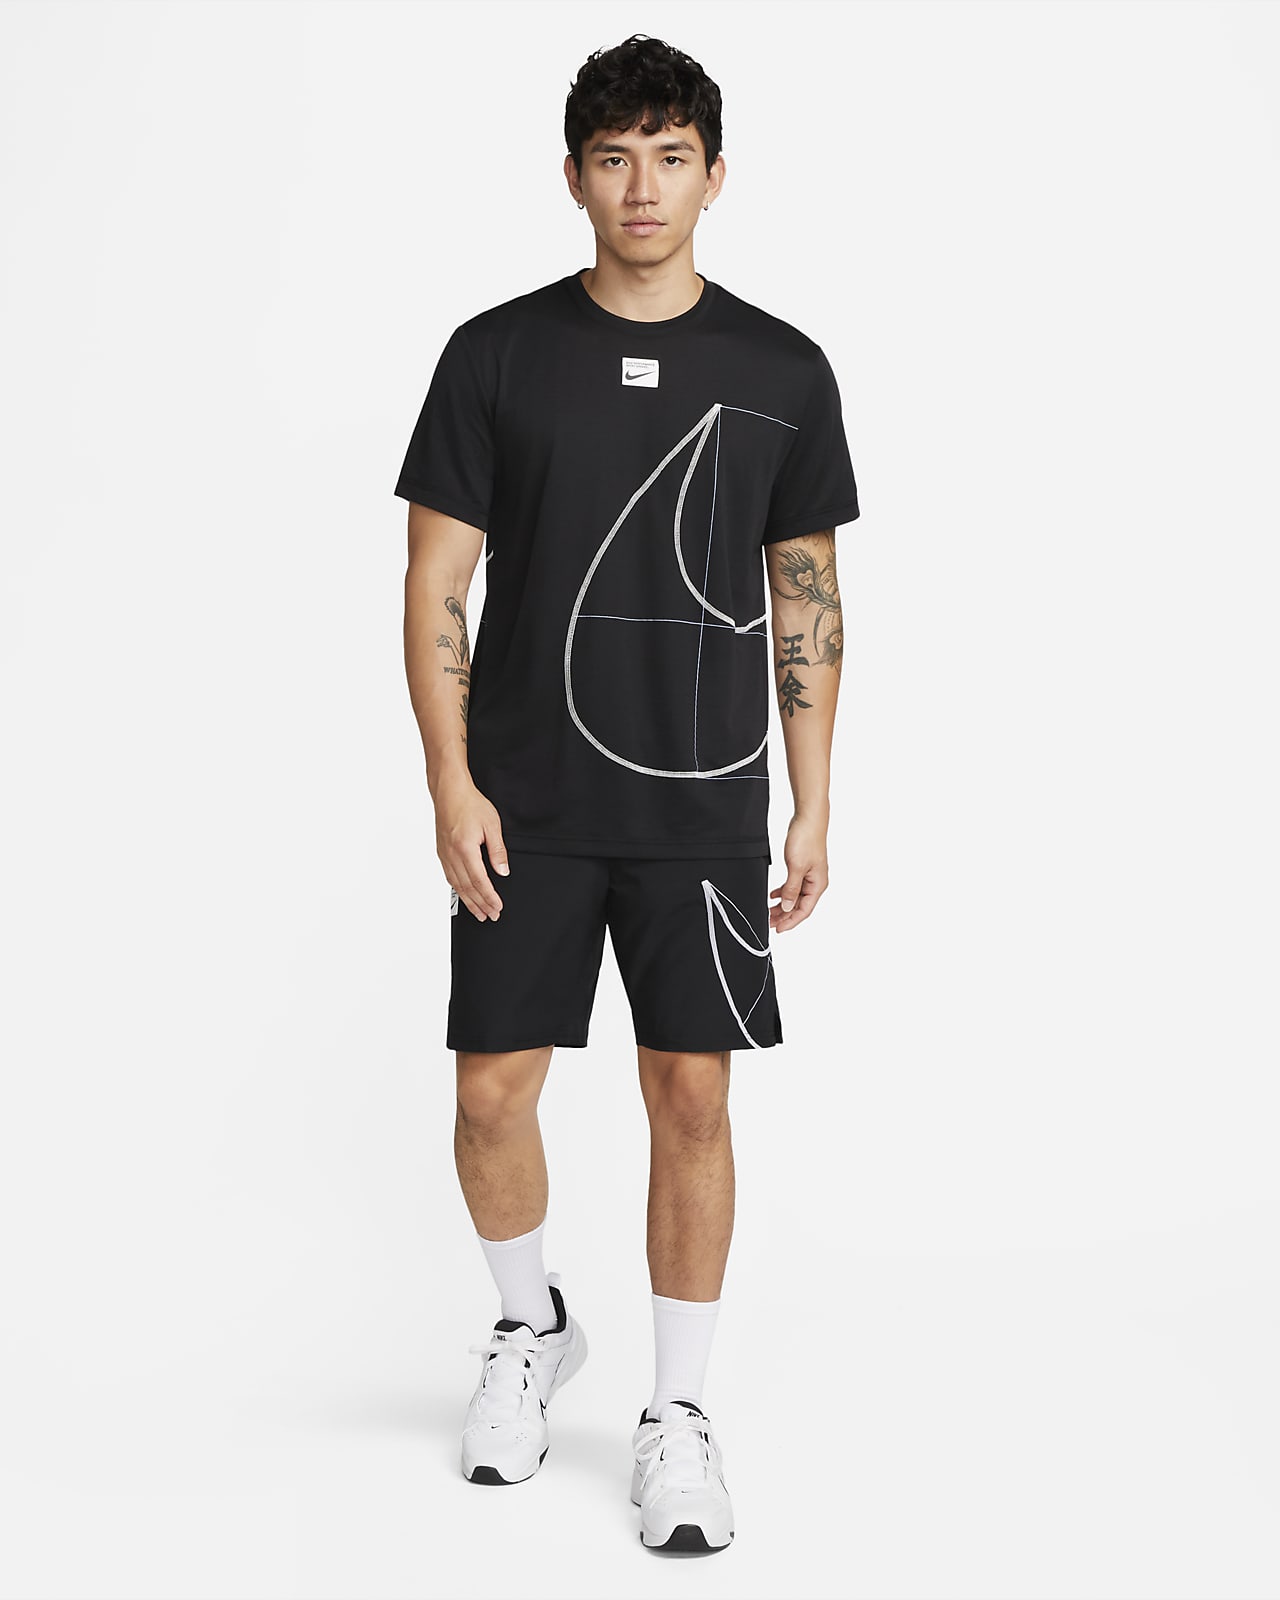 Short Nike Dri-Fit Flex Woven 9'' Masculino - Cinza+Preto CU4945-084